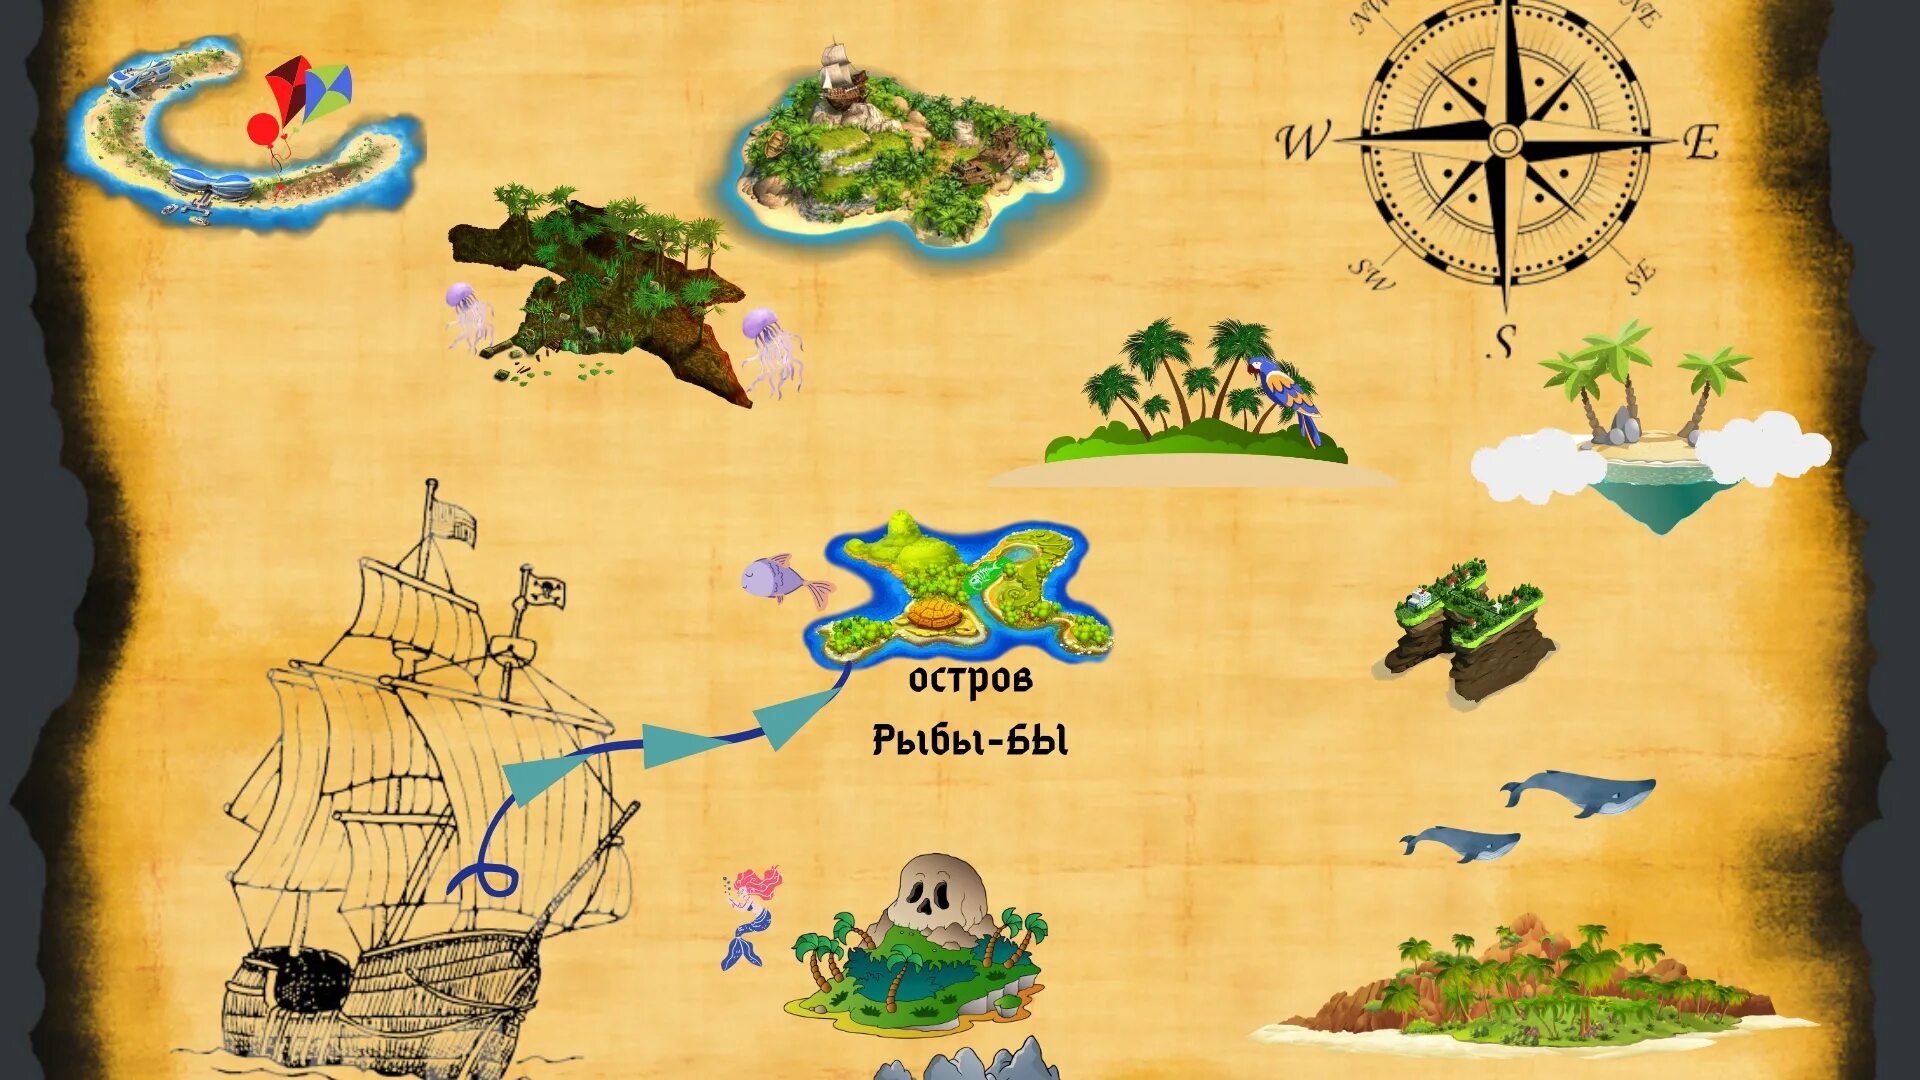 Карта для игры путешествия. Карта путешествия для детей. Карта путешествия по островам для детей. Морская карта для детей. Картинка карты путешествие